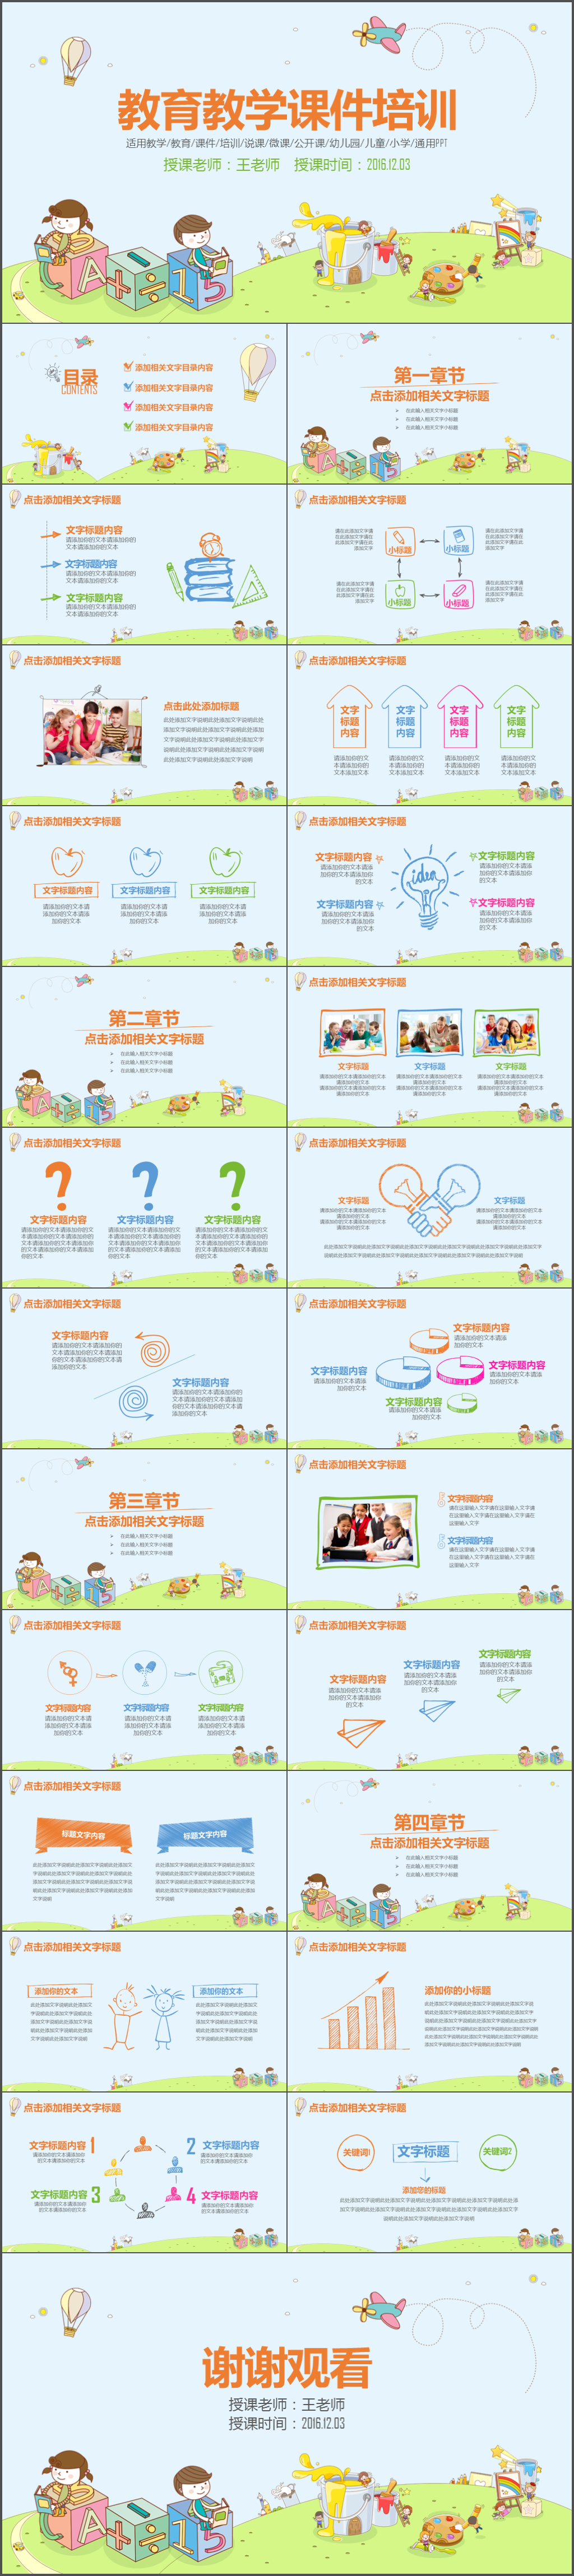 小学幼儿园教育教学培训说课公开课课件通用PPT模板 (1)